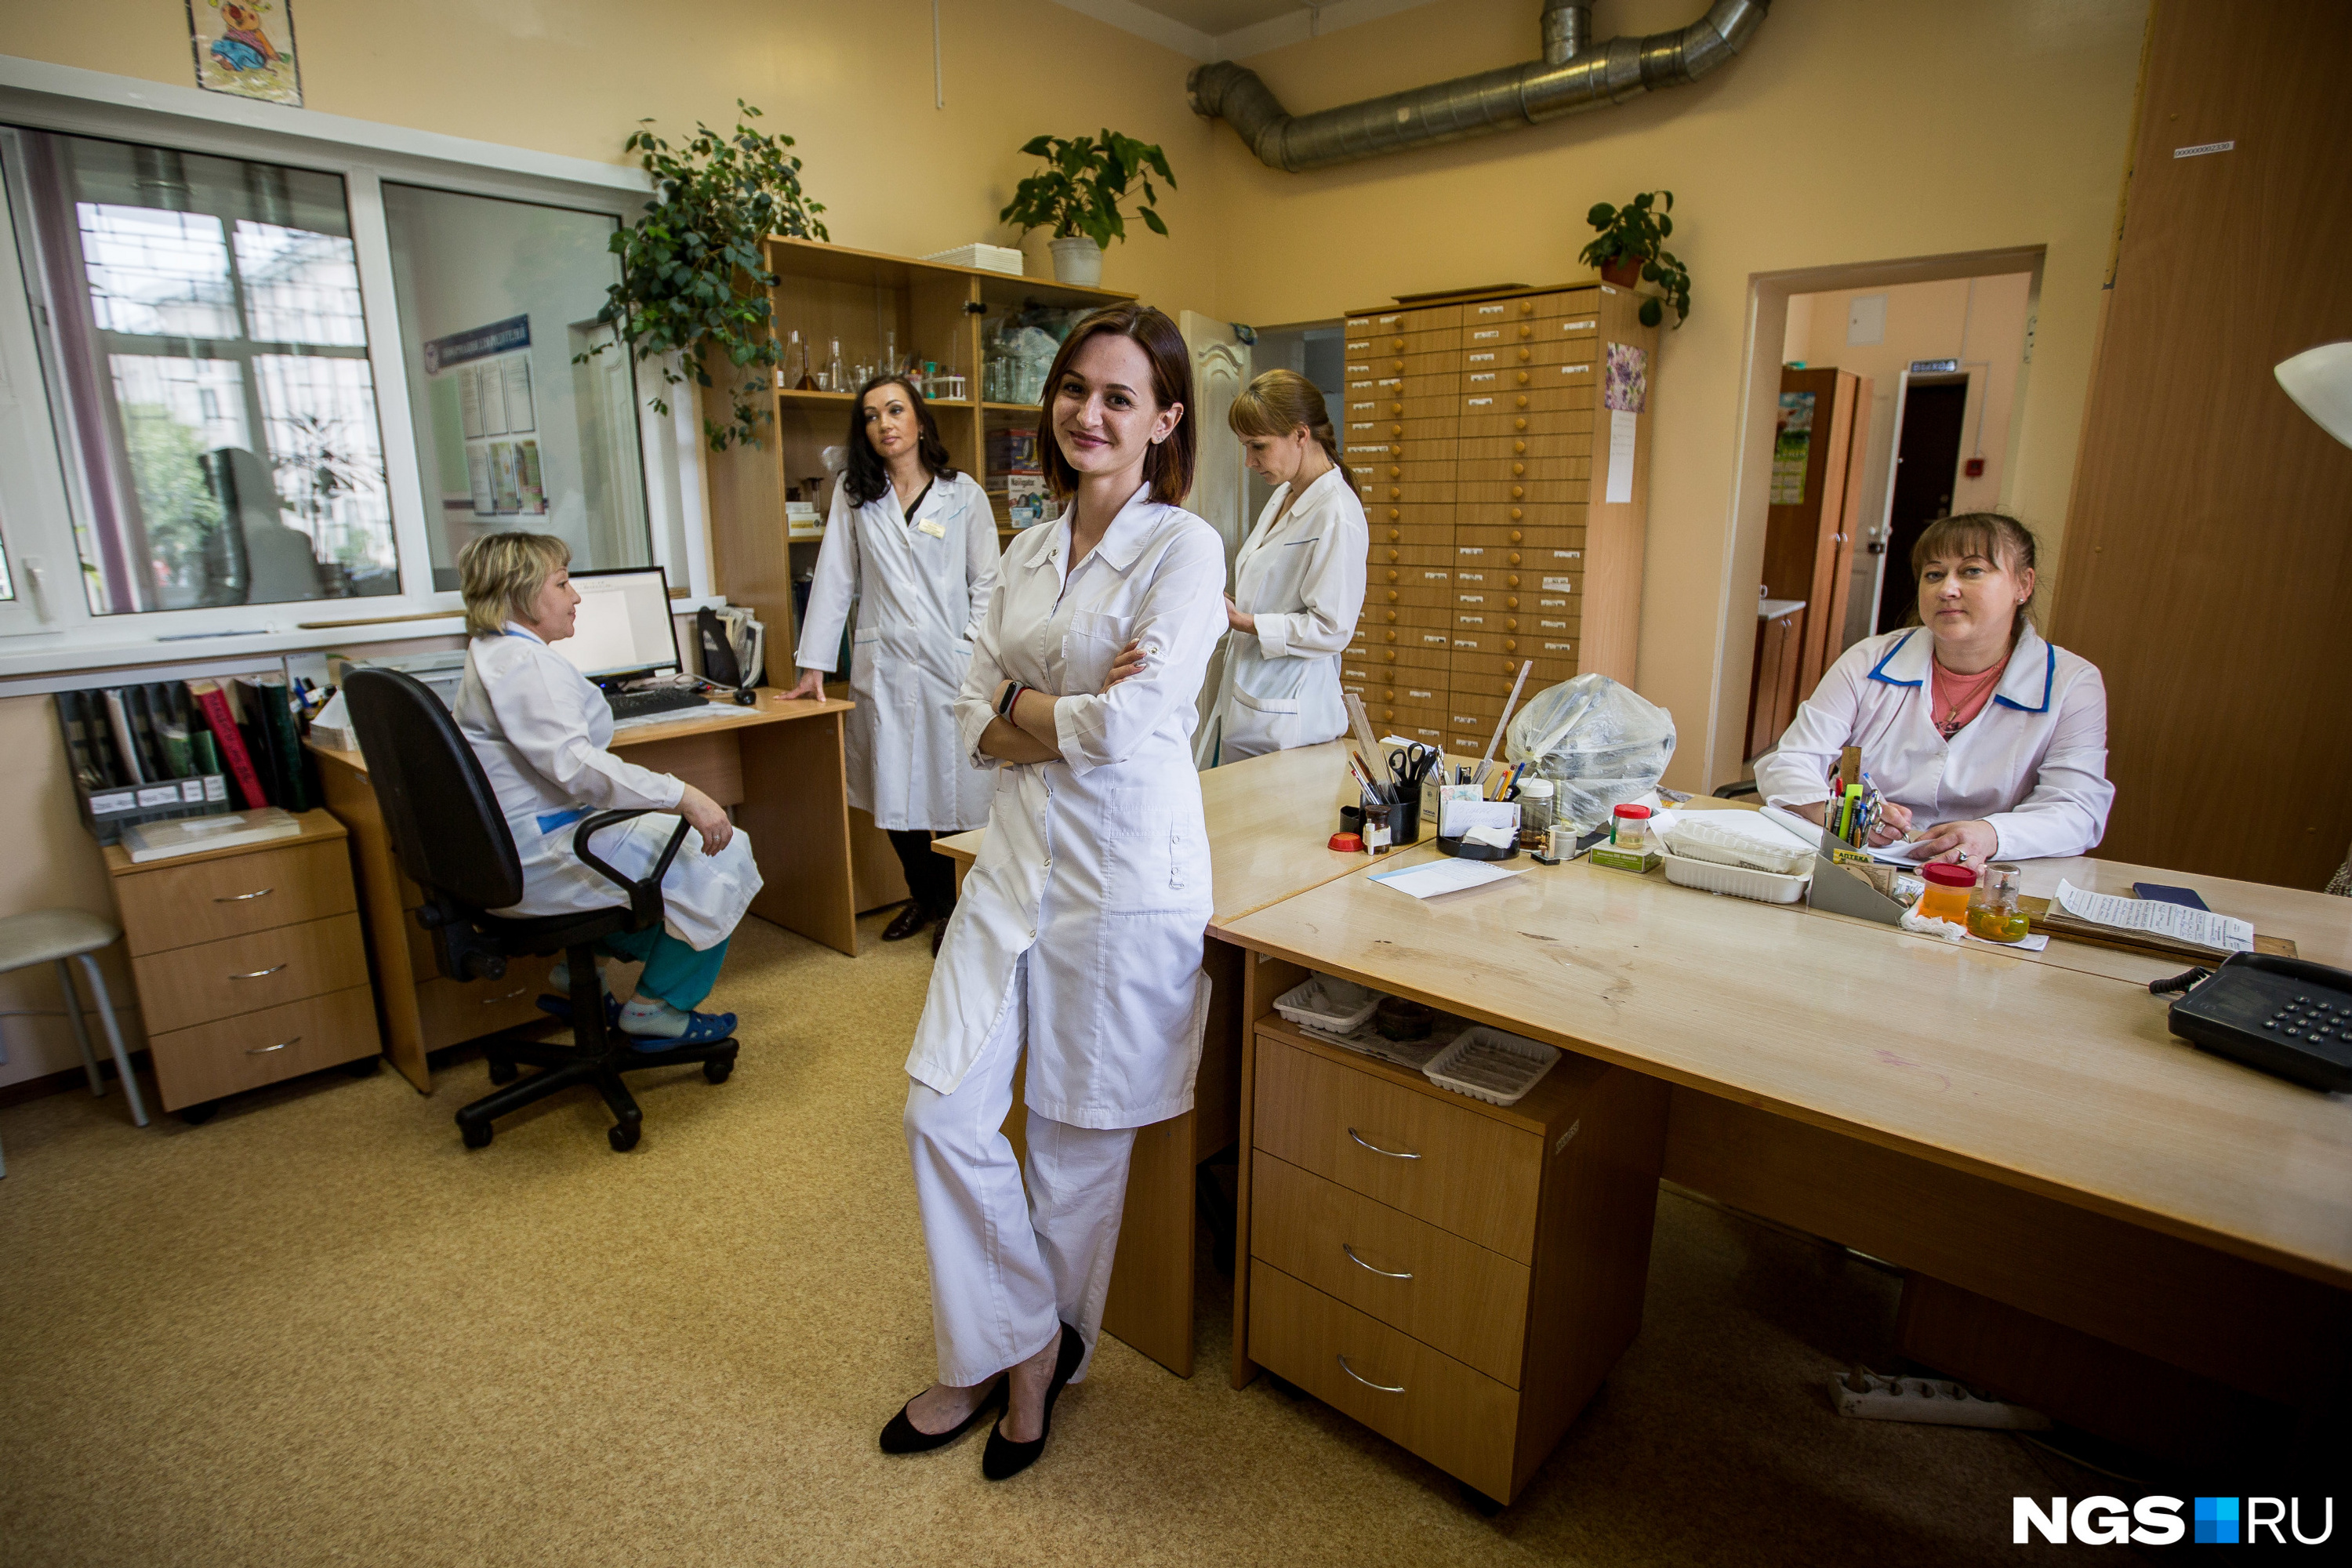 Наталья Клёсова заверила, что ей хватает общения с коллегами — как с лаборантами и санитарками, так и с другими врачами, хирургами и педиатрами